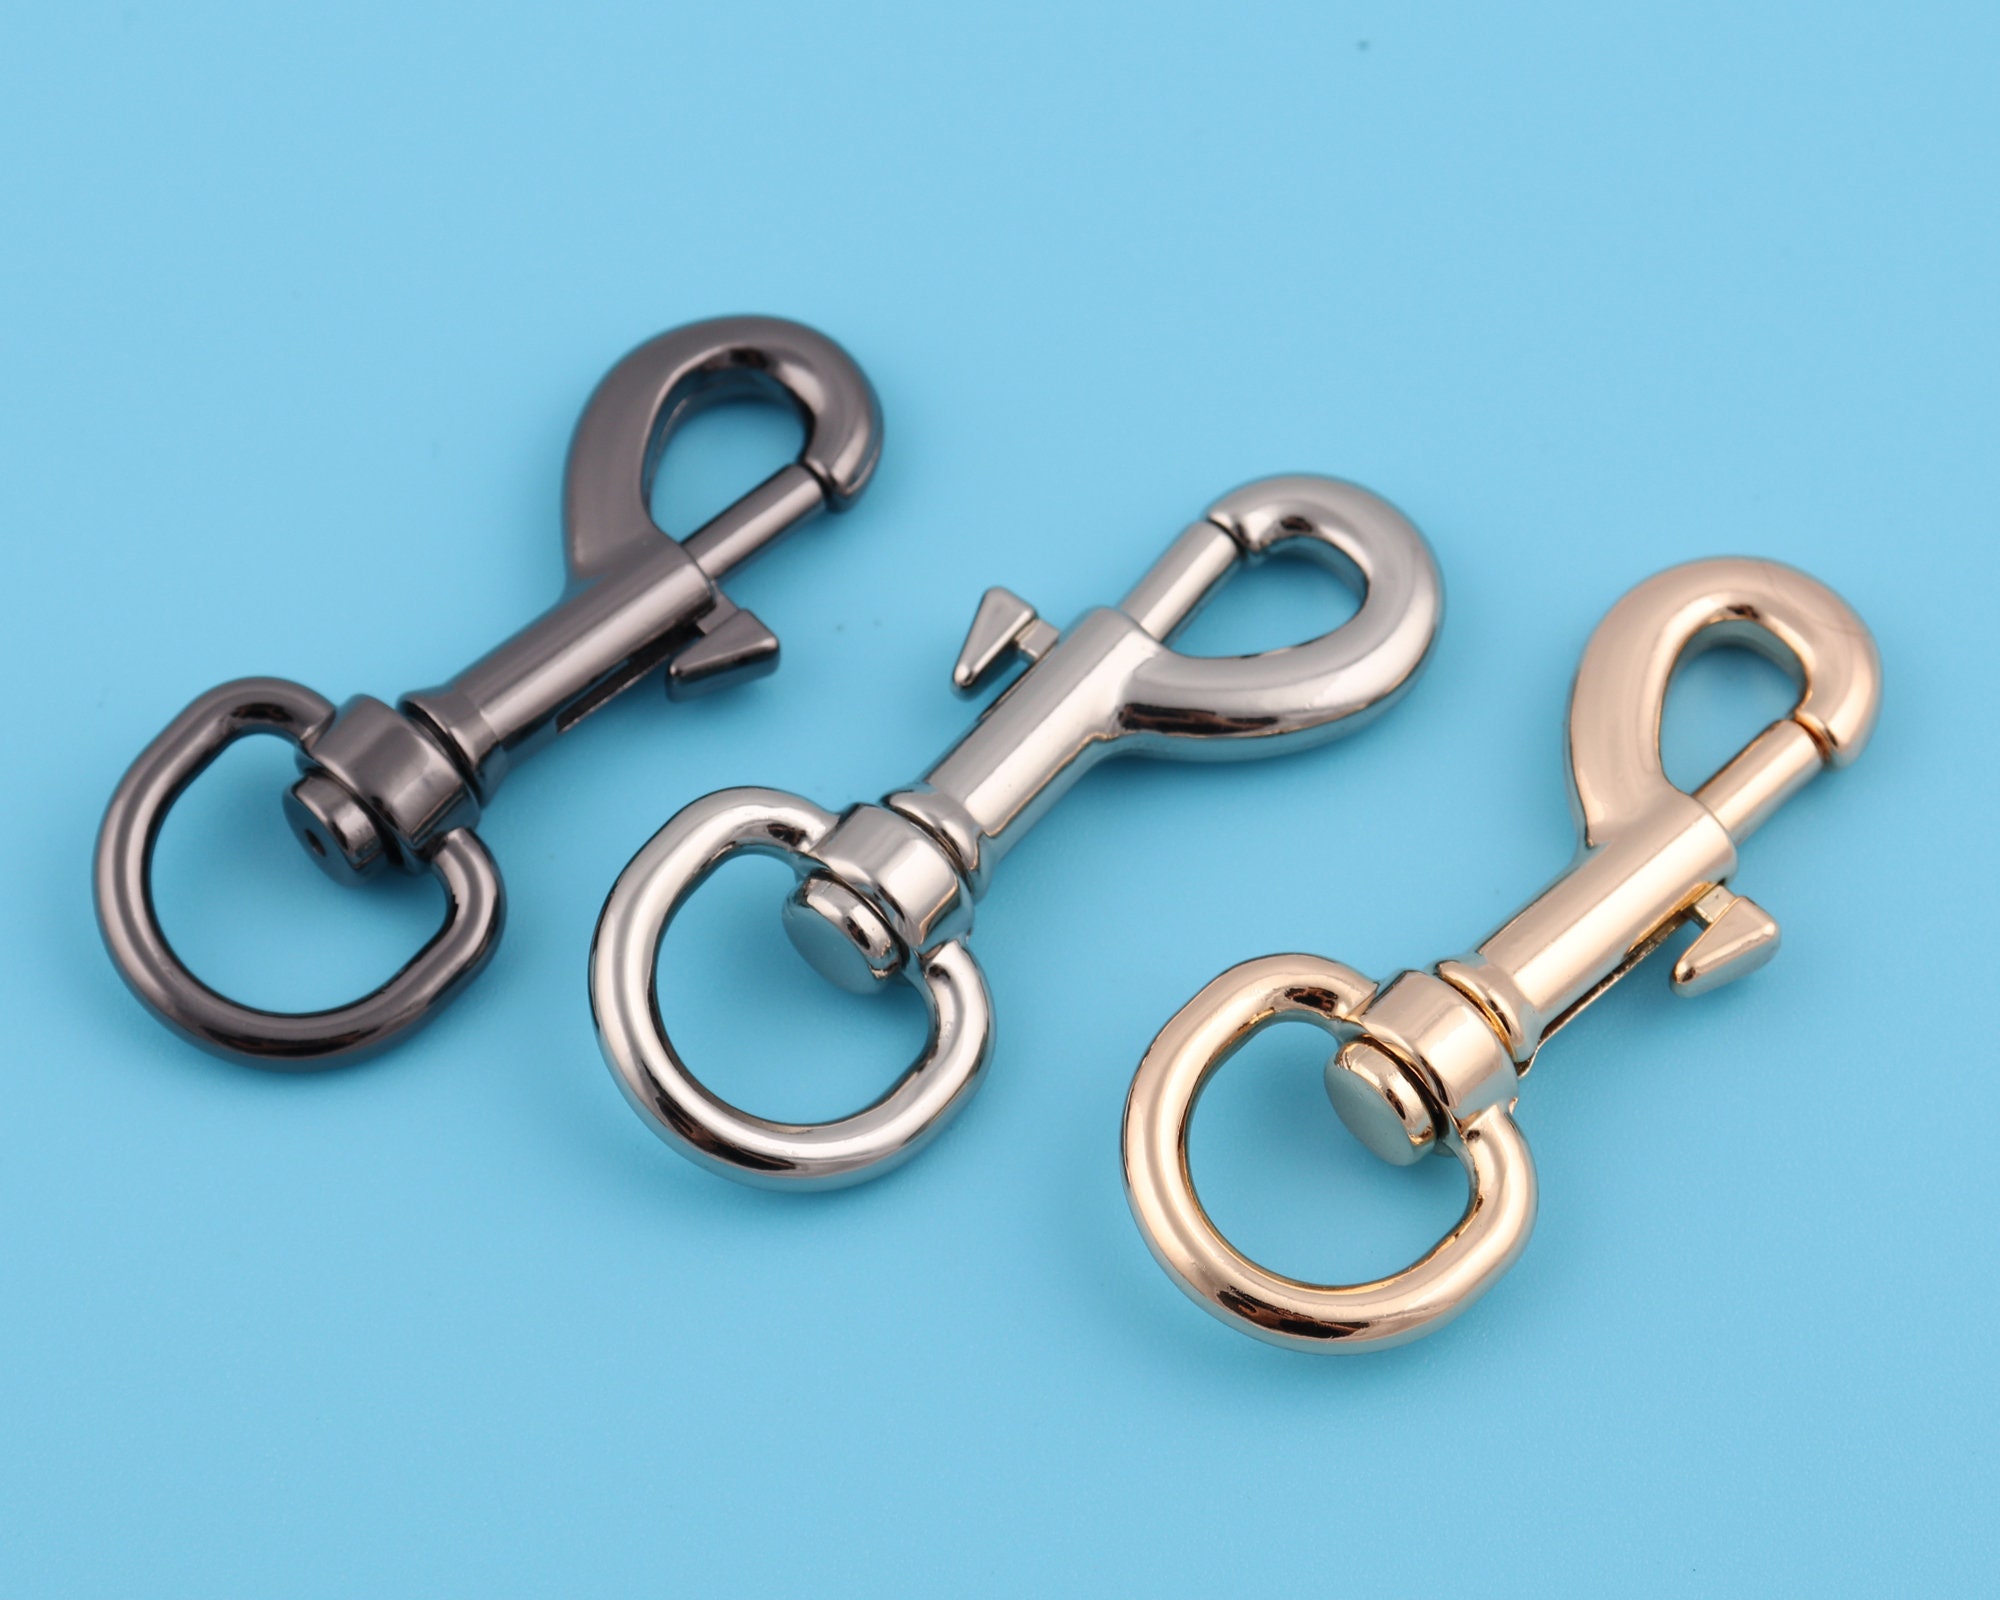 9PC Round Steel Swivel Eye Bolt Snap Hook Key Chain Pet Leash